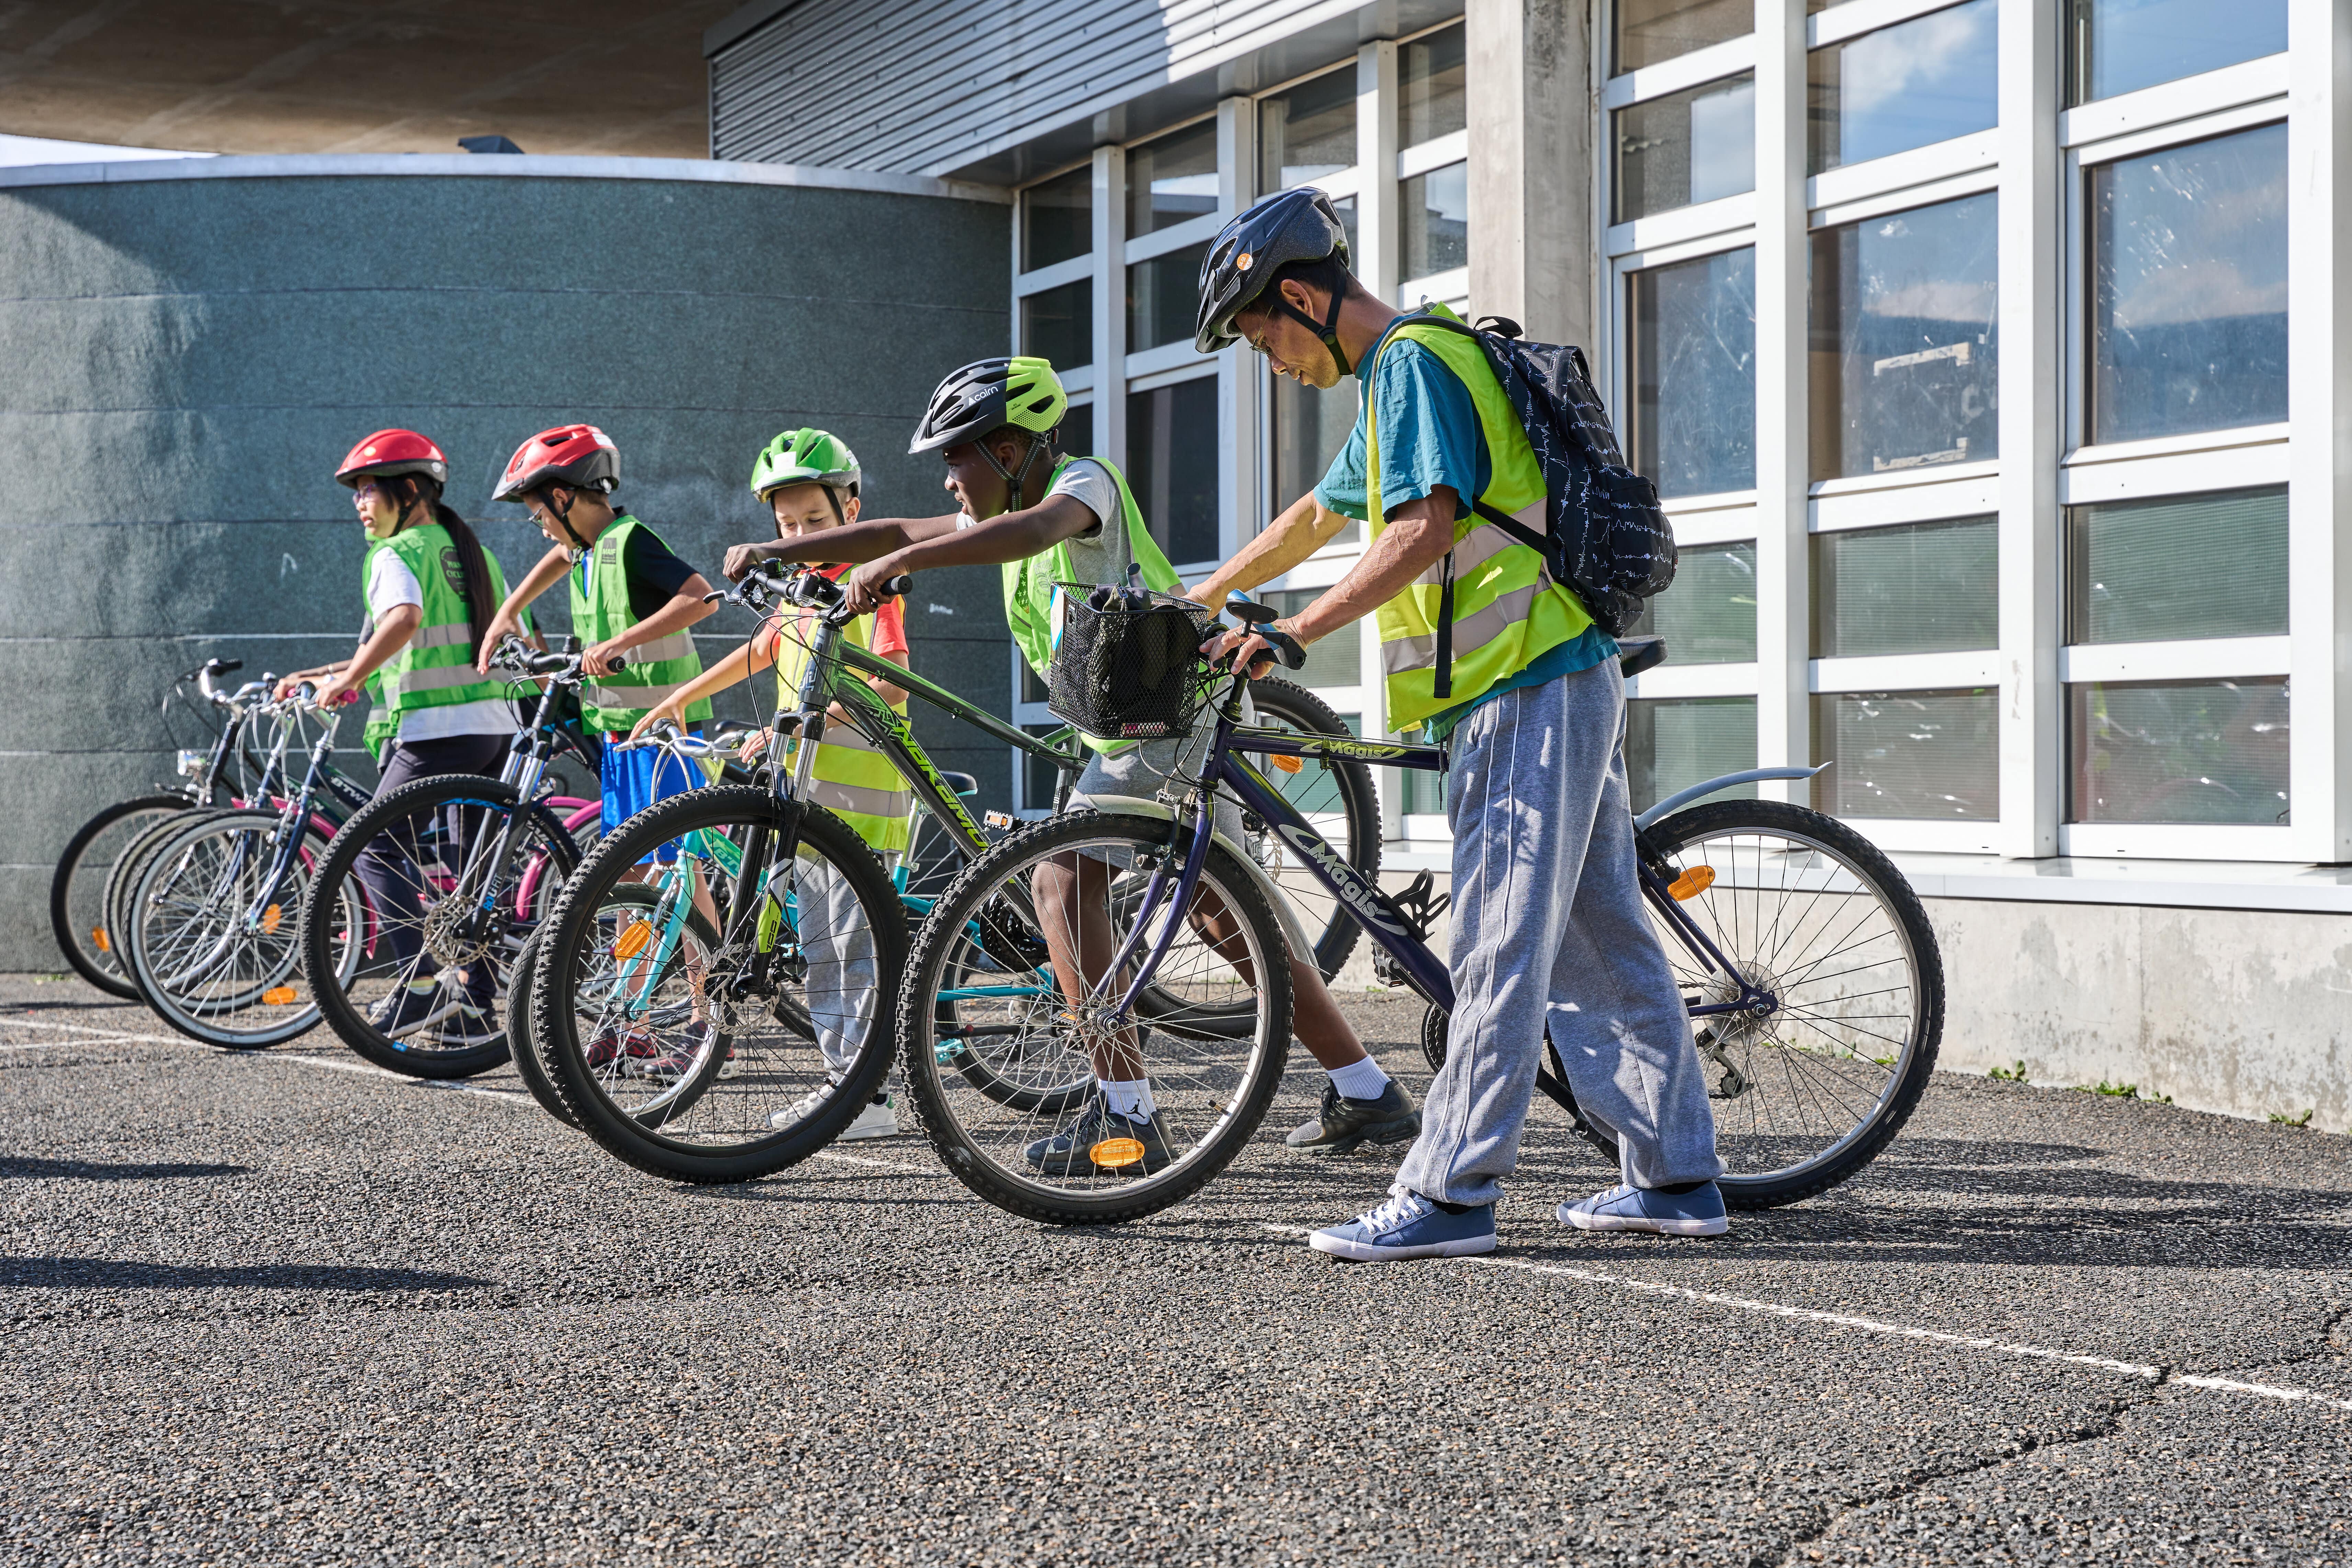 Génération Vélo propose une formation prise en charge à 100% pour devenir intervenant Savoir Rouler à Vélo (SRAV). Celle-ci permet d'acquérir les compétences nécessaires pour dispenser les trois blocs du Savoir Rouler à Vélo aux enfants de 6 à 11 ans. Témoignages de deux formateurs et deux professionnels ayant suivi la formation.